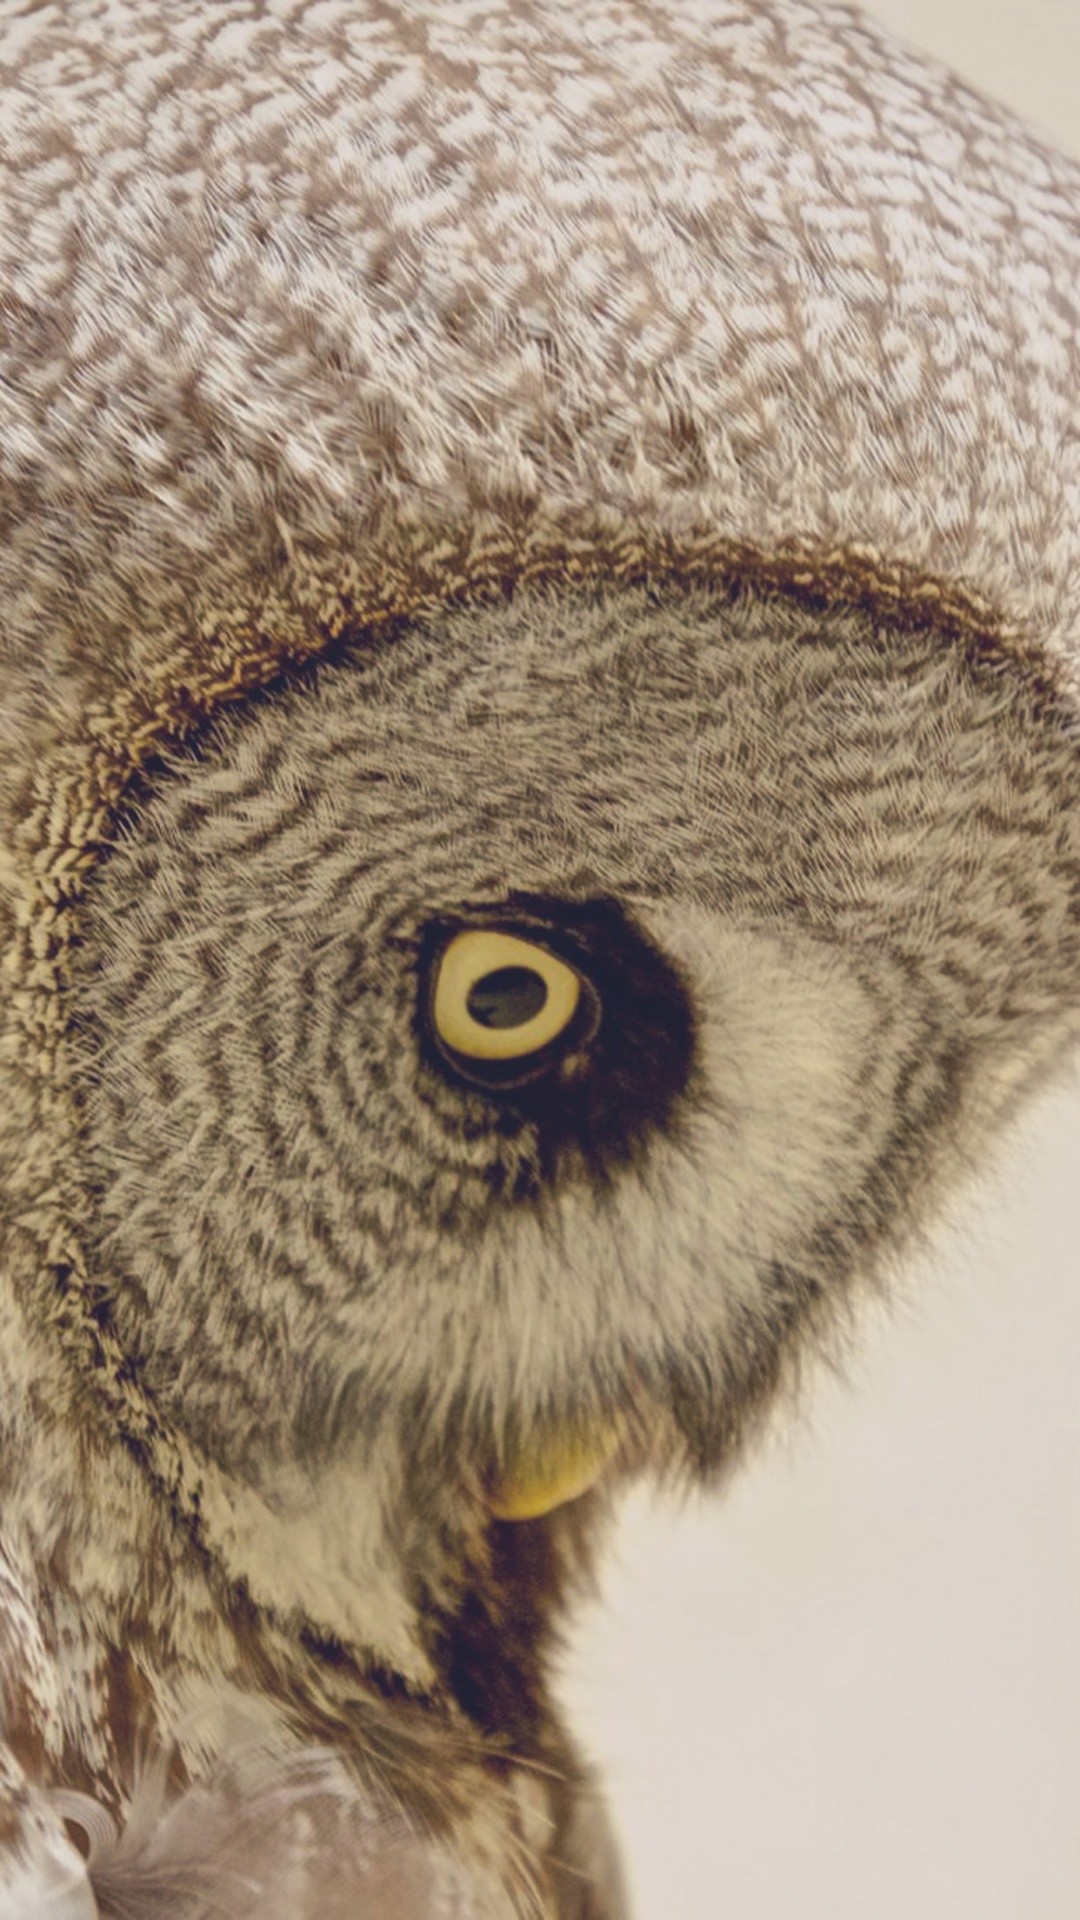 1080x1920 Owl Head Yellow Eye Profile iPhone 6+ HD Wallpaper